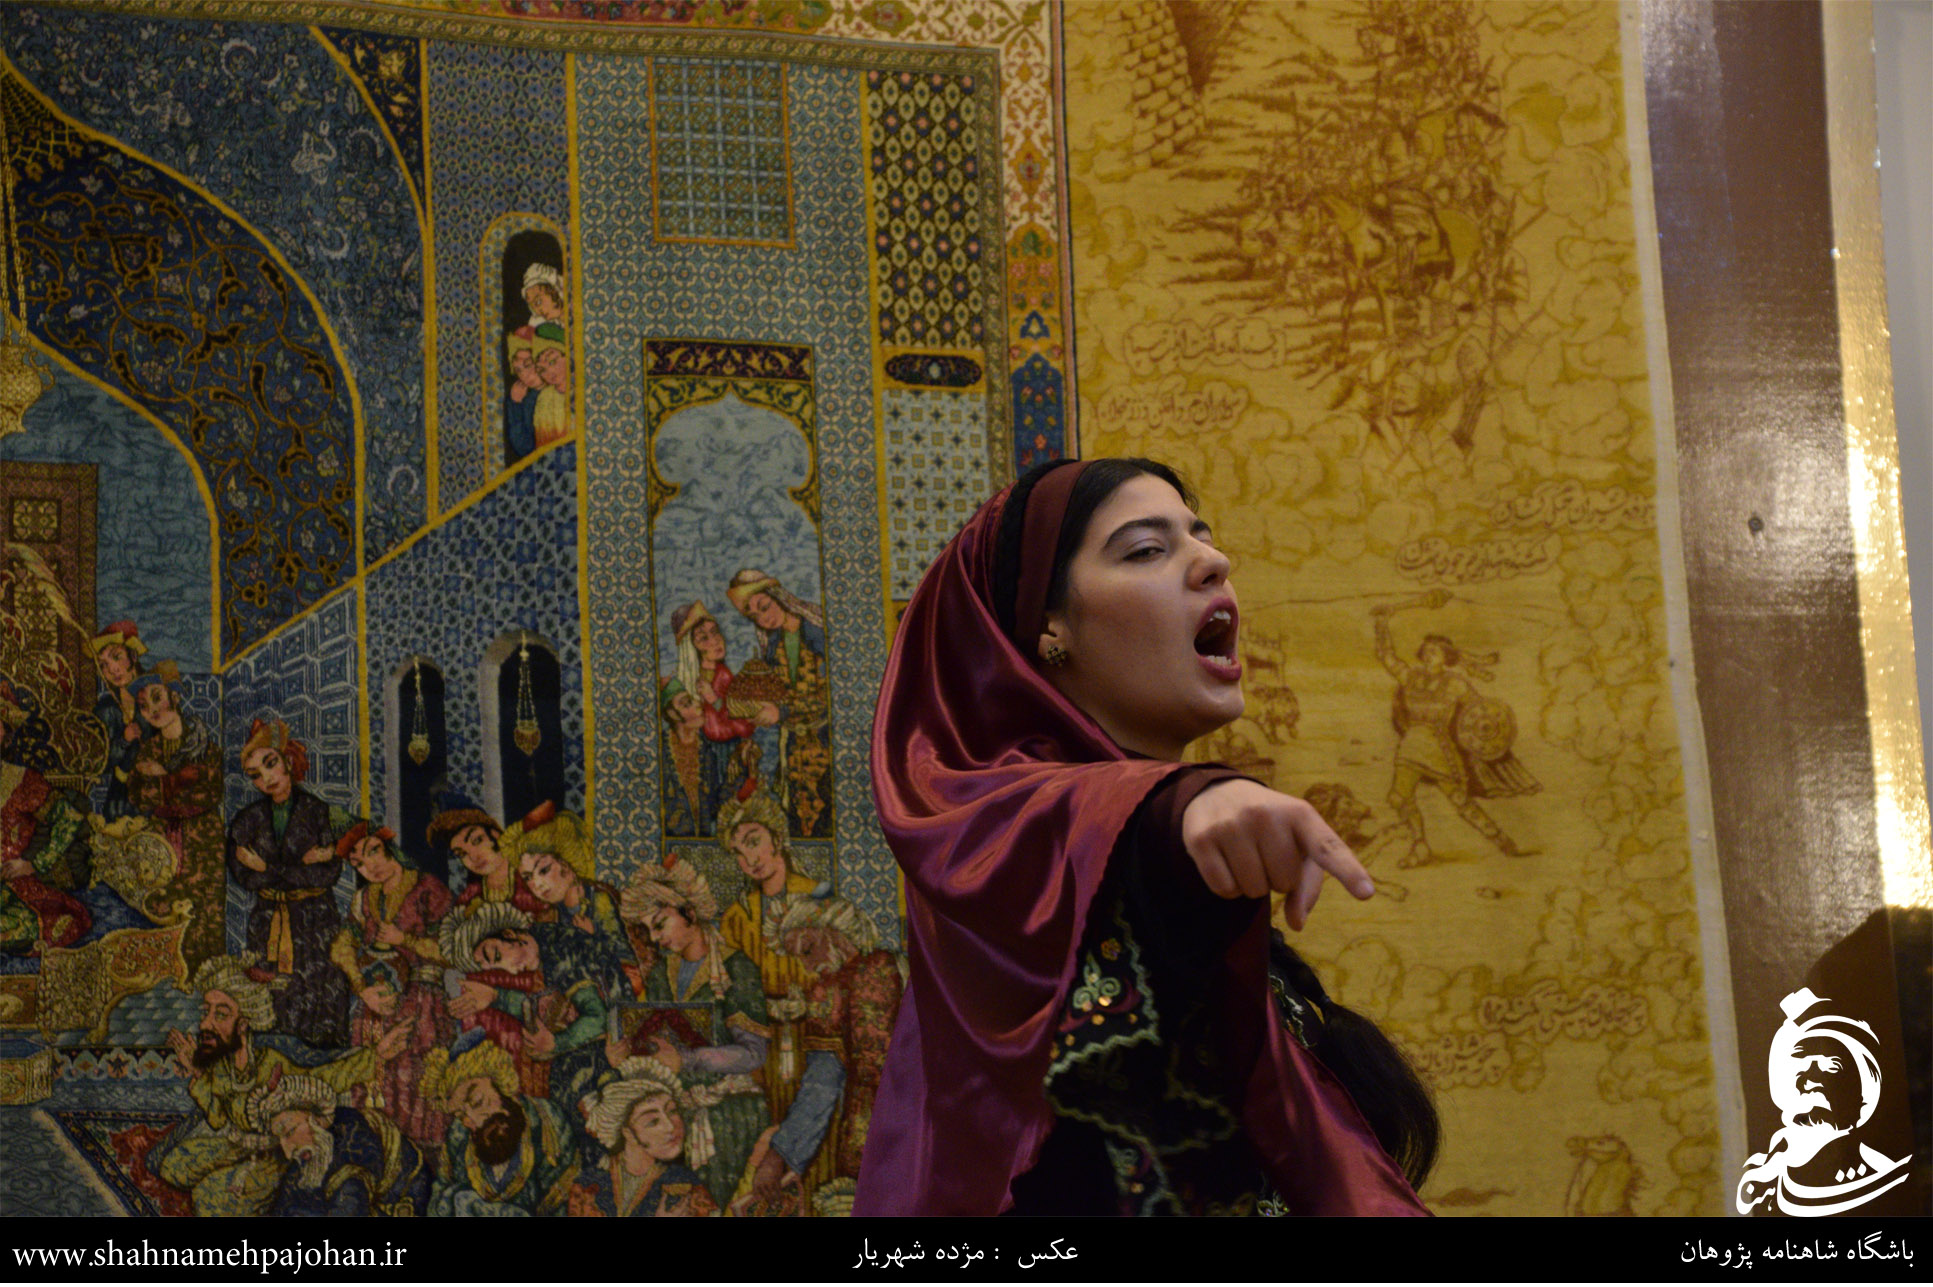 شاهنامه خوانی و نقالی در موزه فرش استاد رسام عرب زاده 